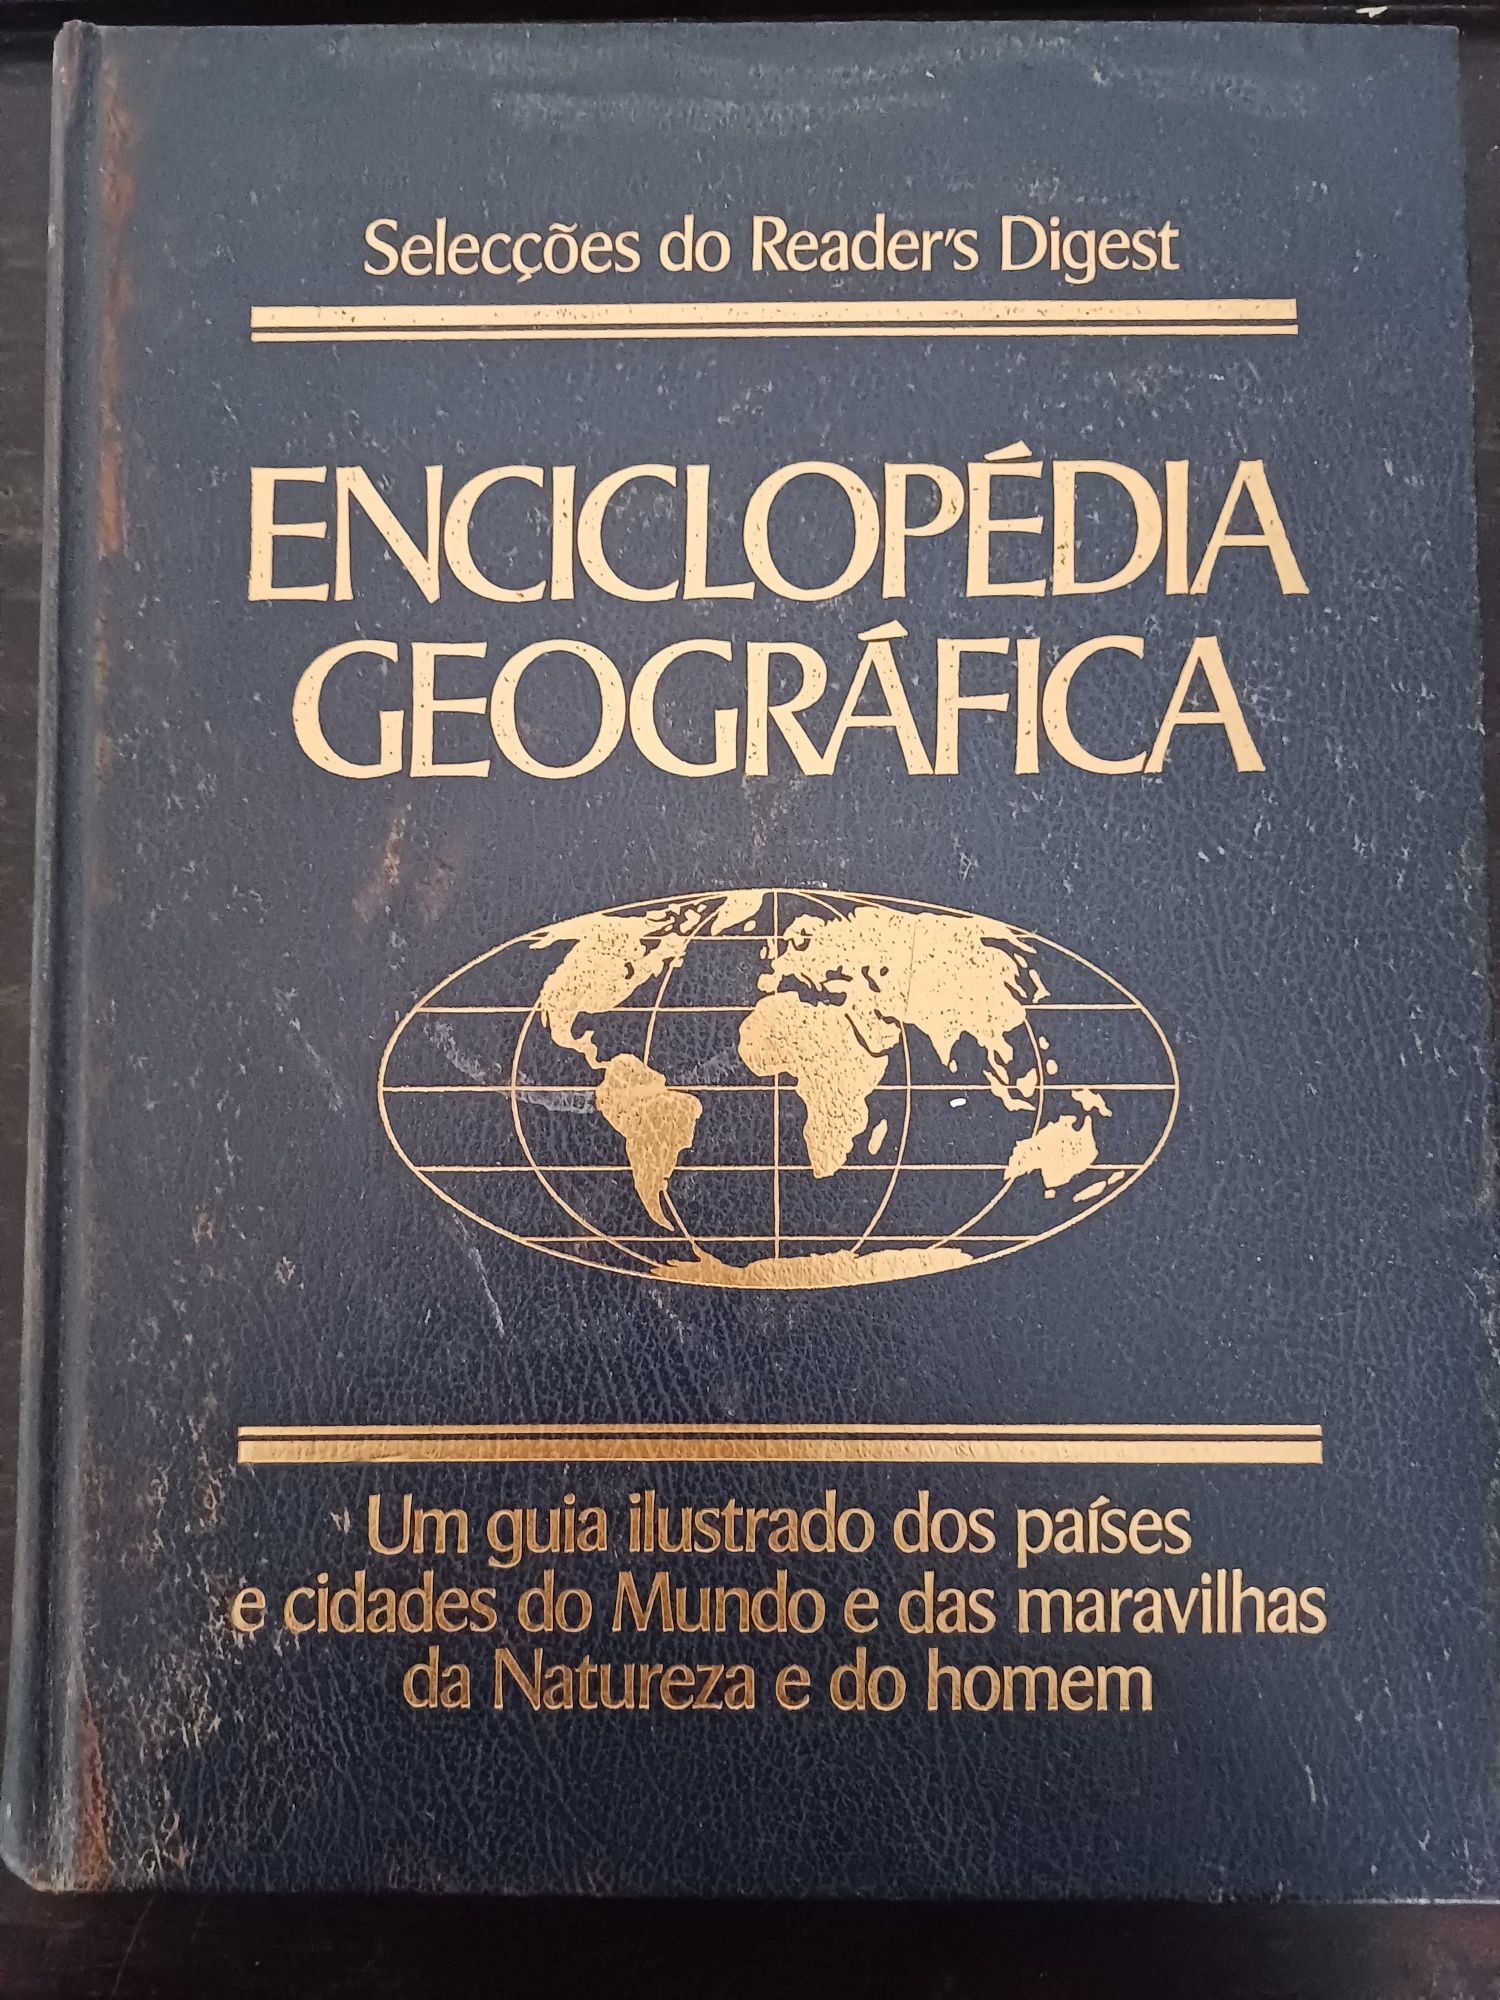 Enciclopédia Geográfica das Seleções do Reader's Digest